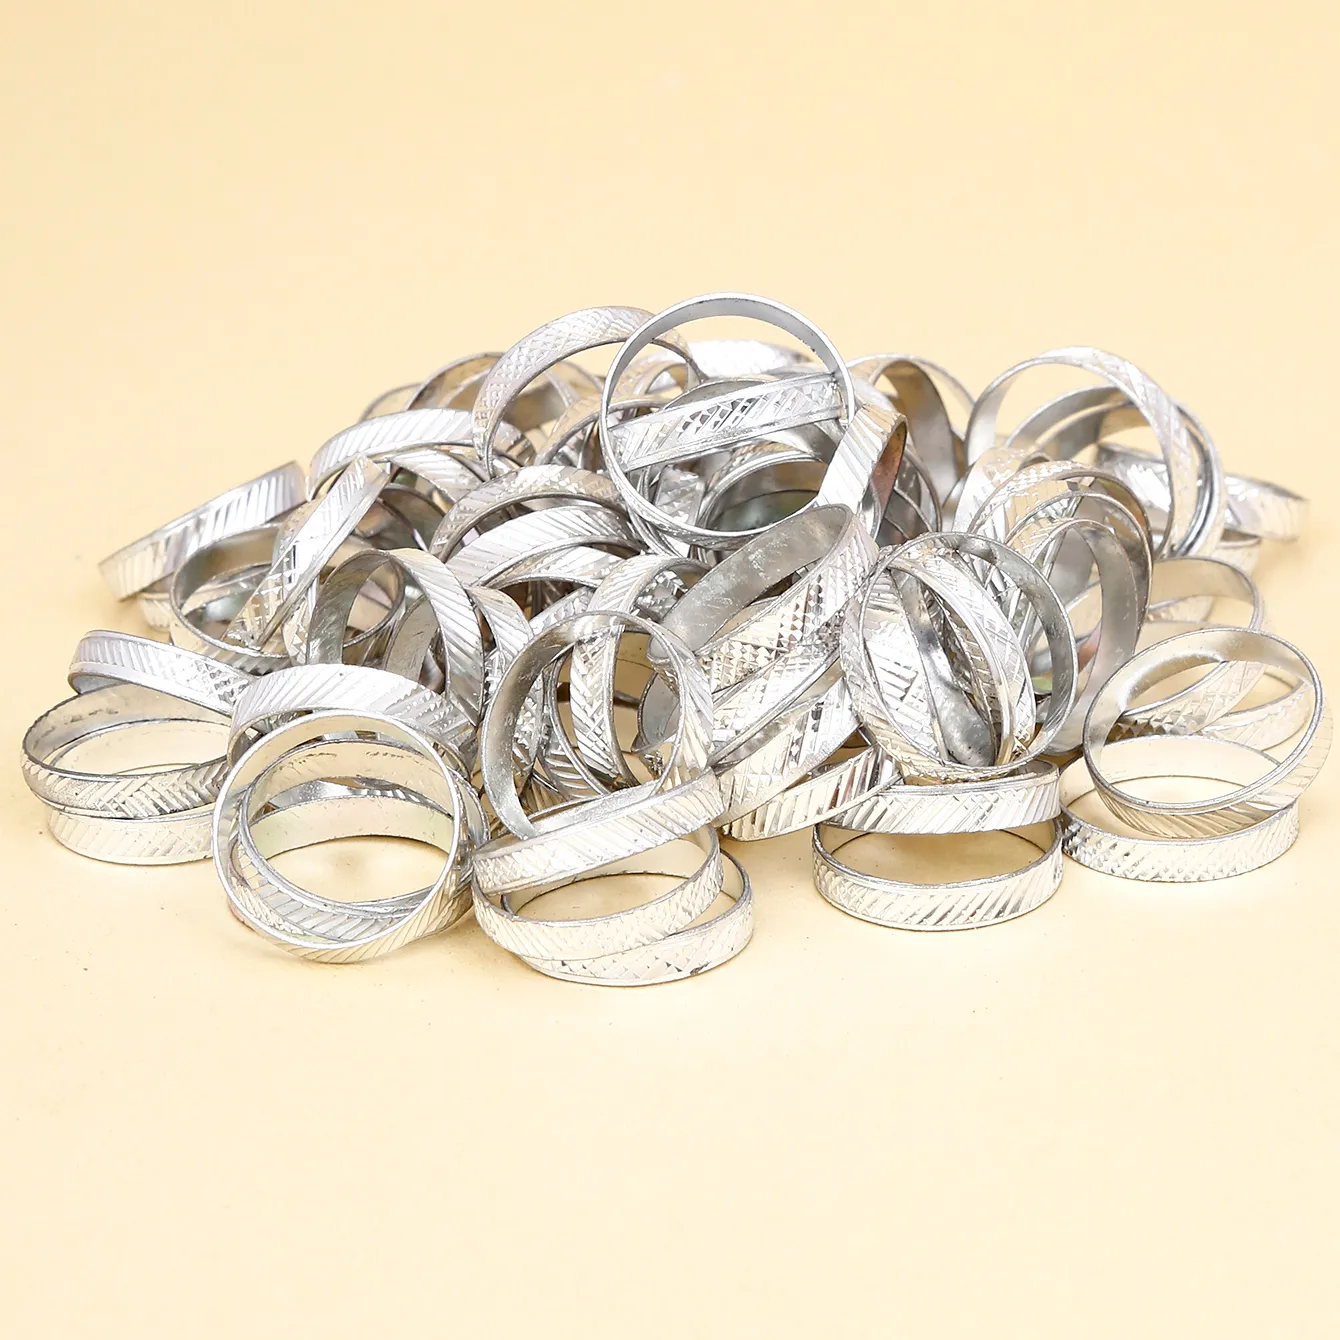 Yeni Model rastgele boyutu, 100 adet 1 torba, kadınlar için basit stil gümüş kaplama alüminyum parmak yüzük hediye